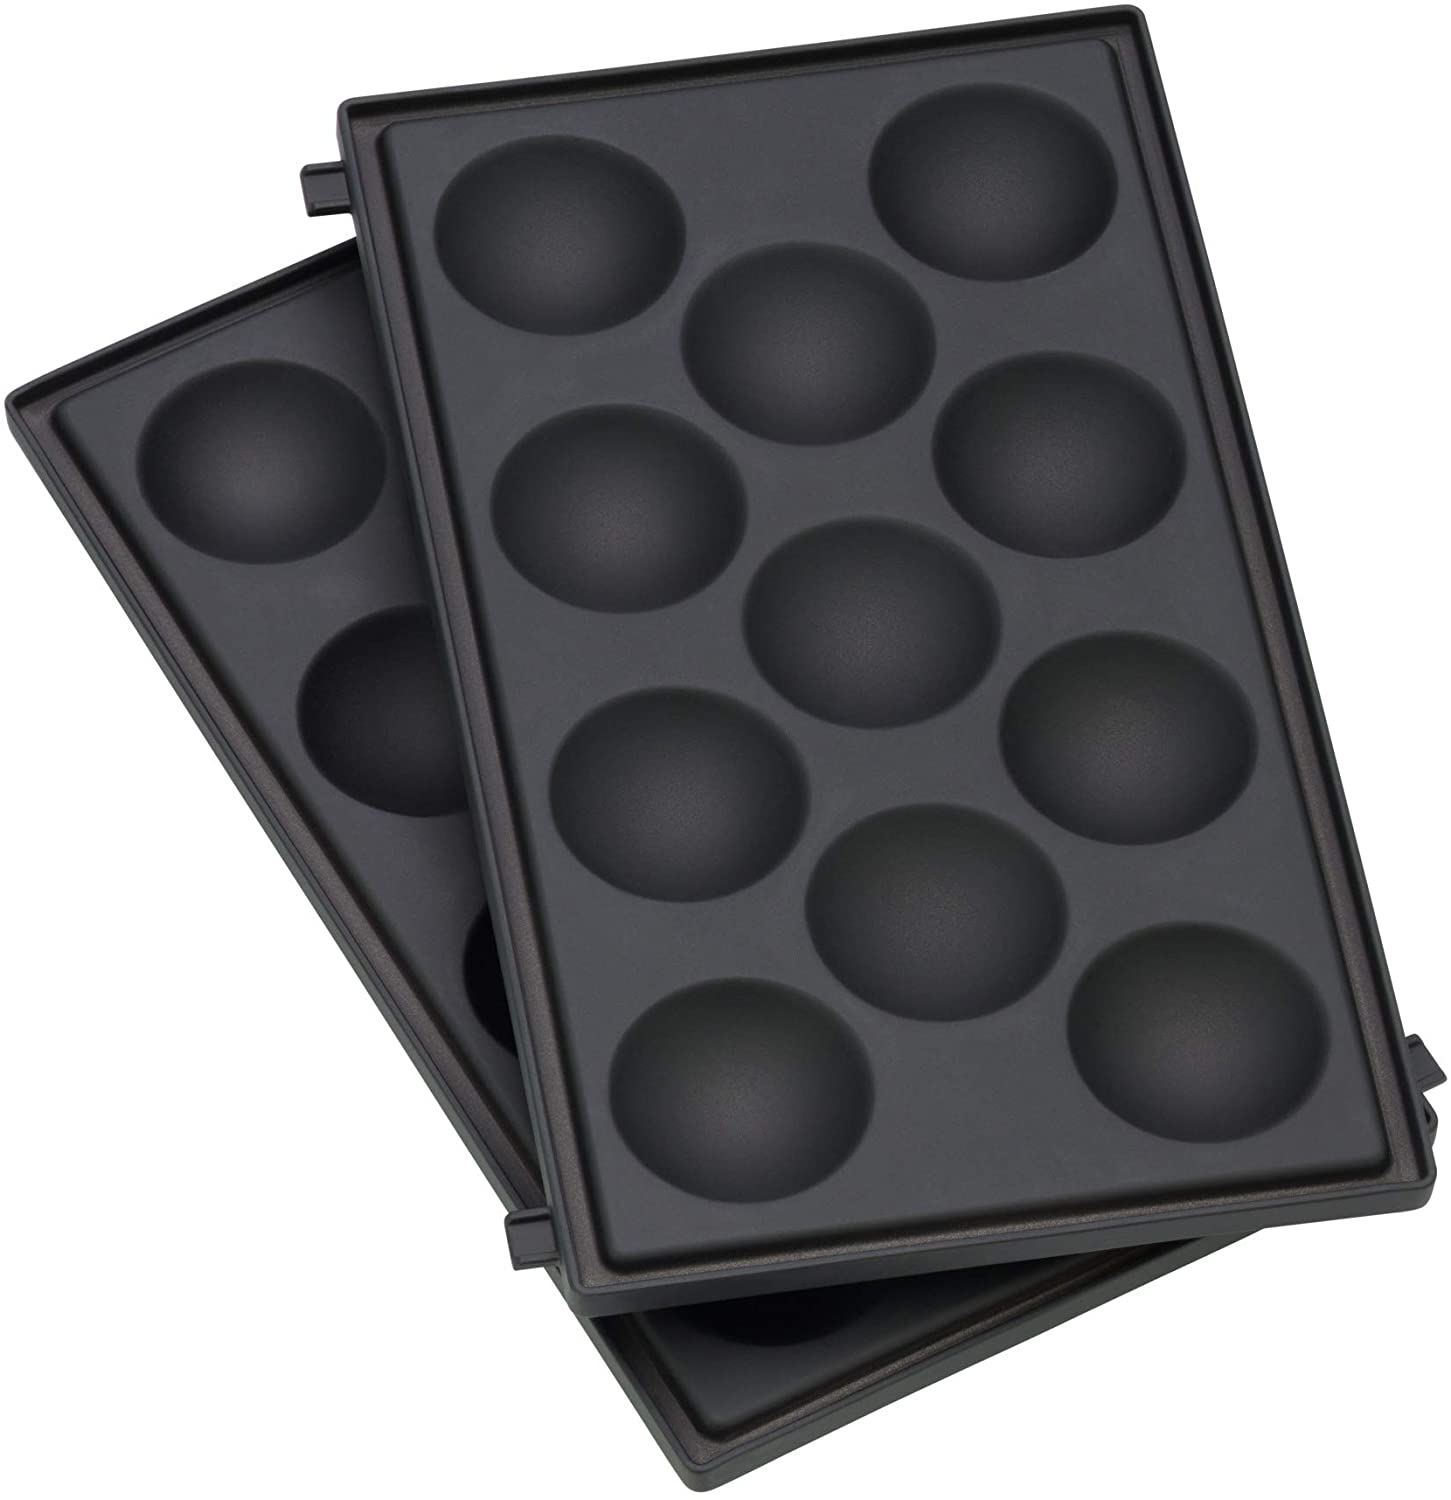 WMF LONO Snack Master Accessories, Muffin Plate Set, 2 Removable Plate Sets, Non-Stick